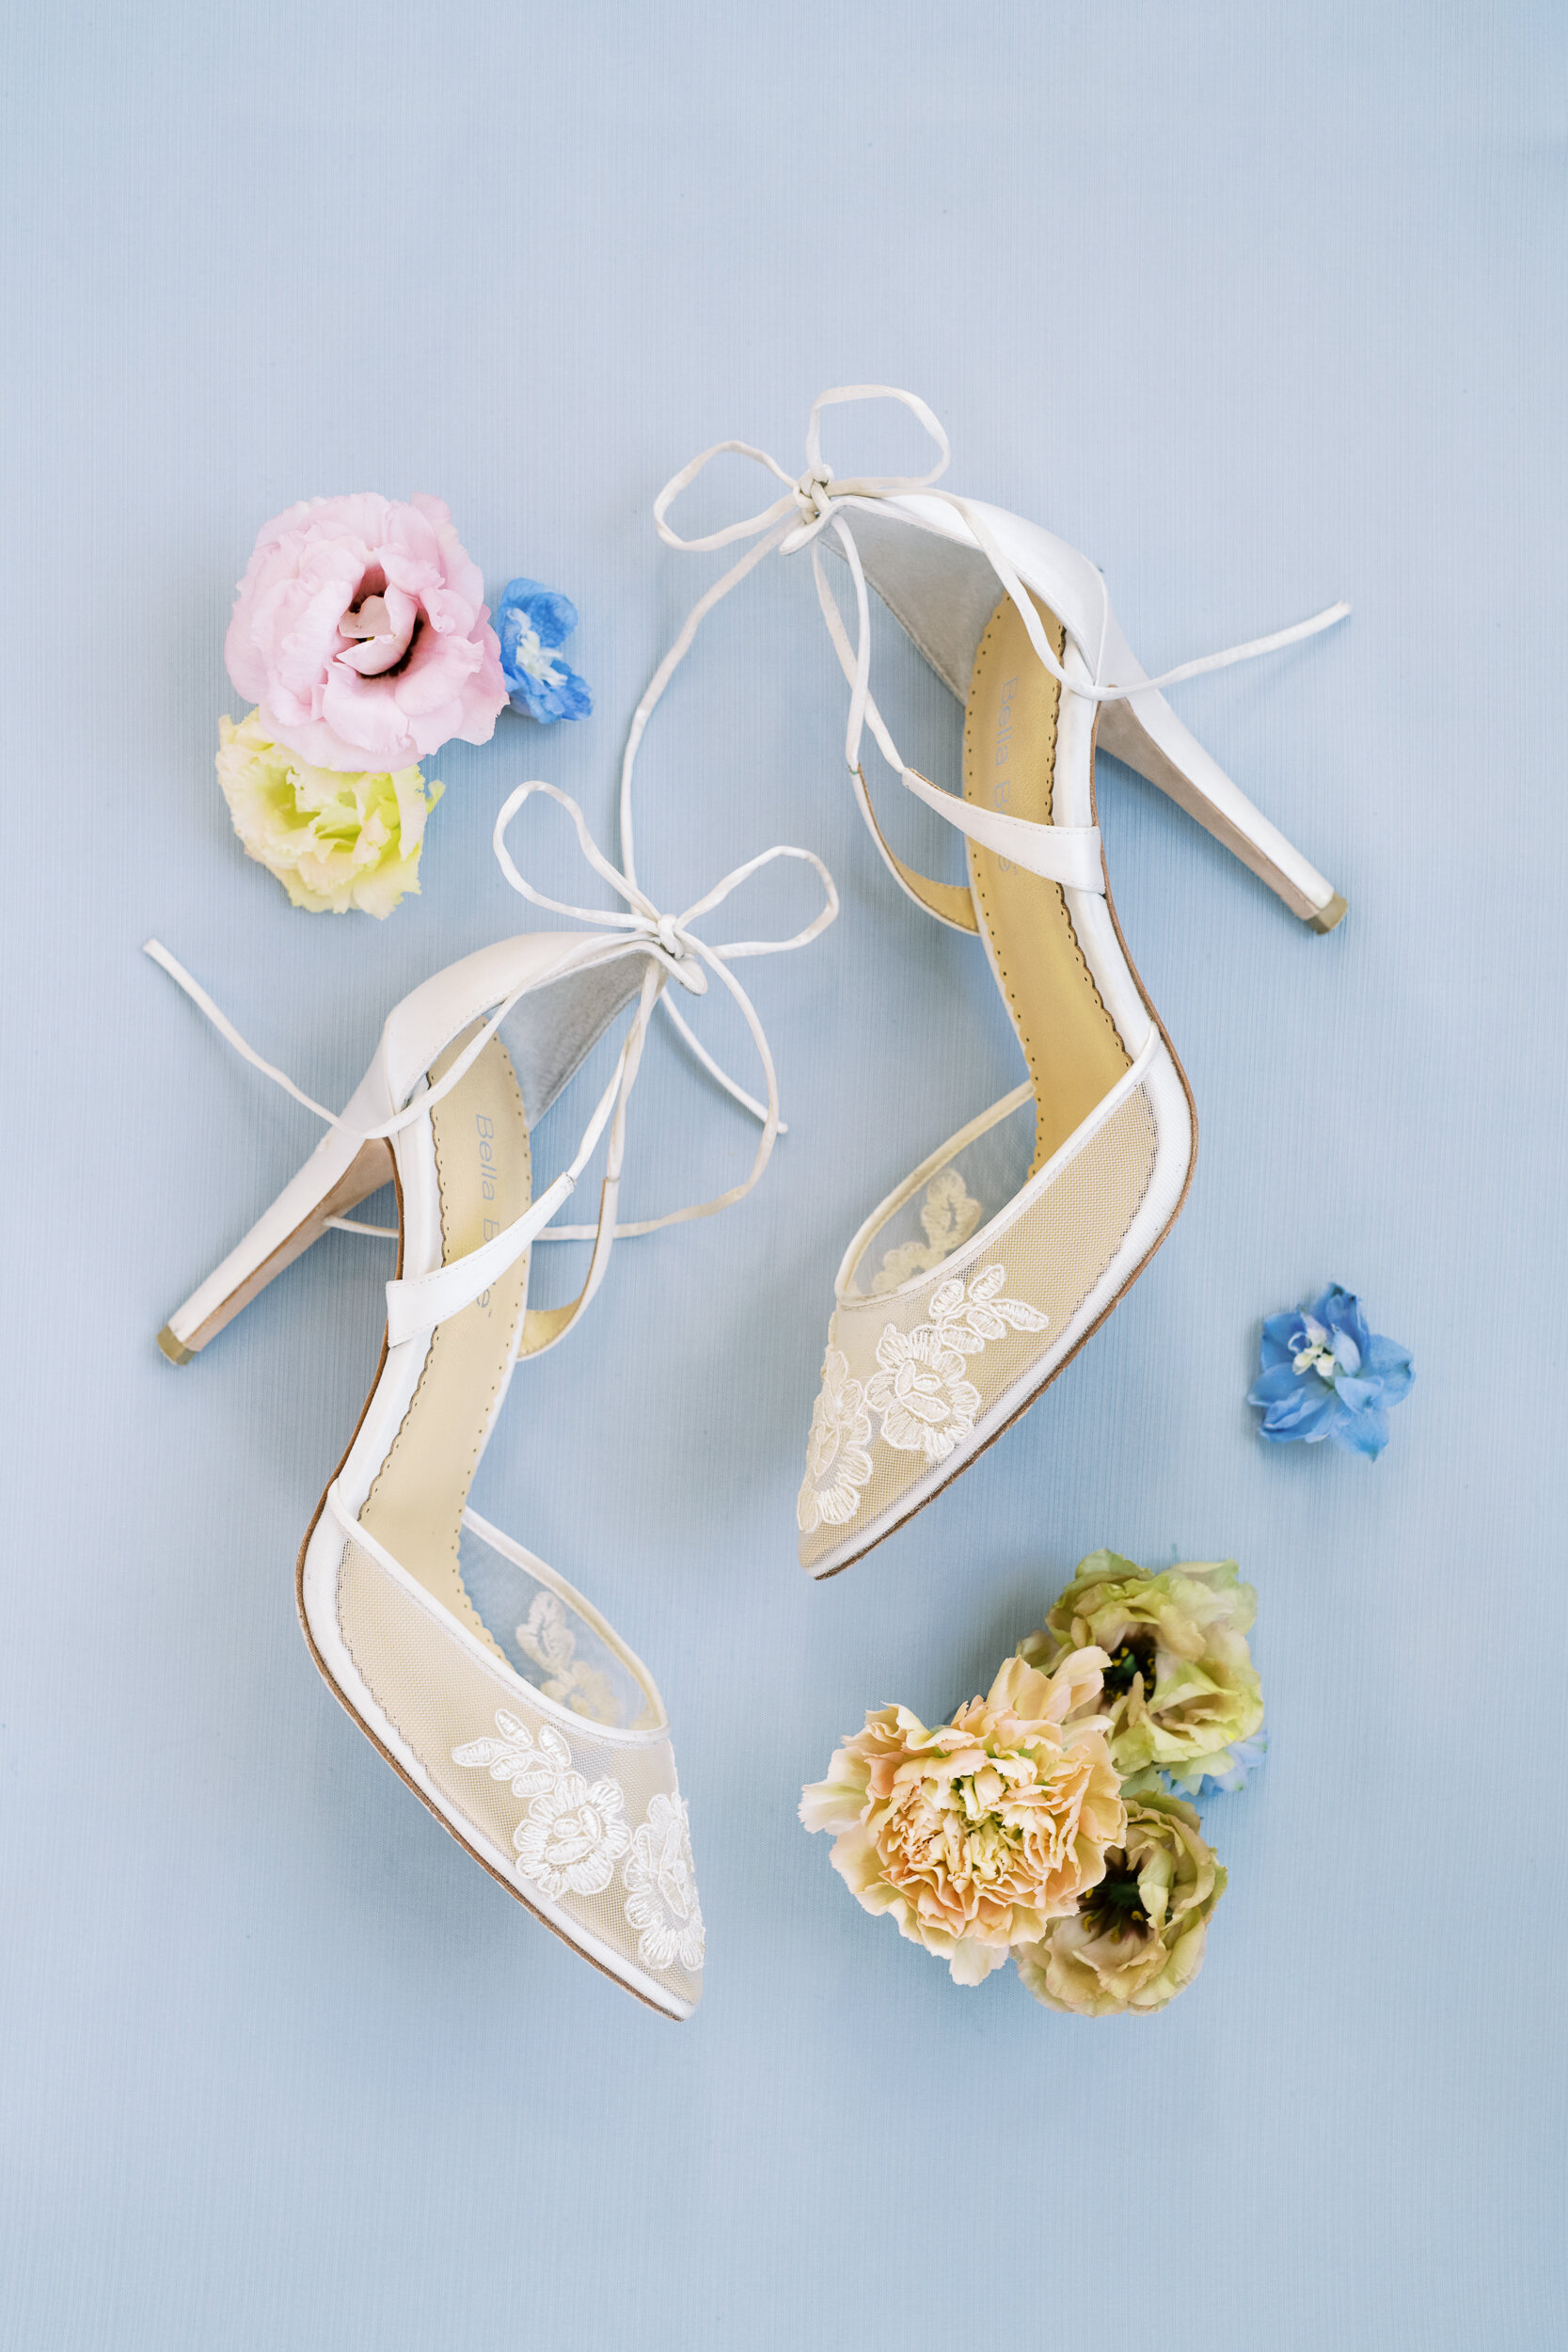 BellaBelle Lace Wedding Shoes